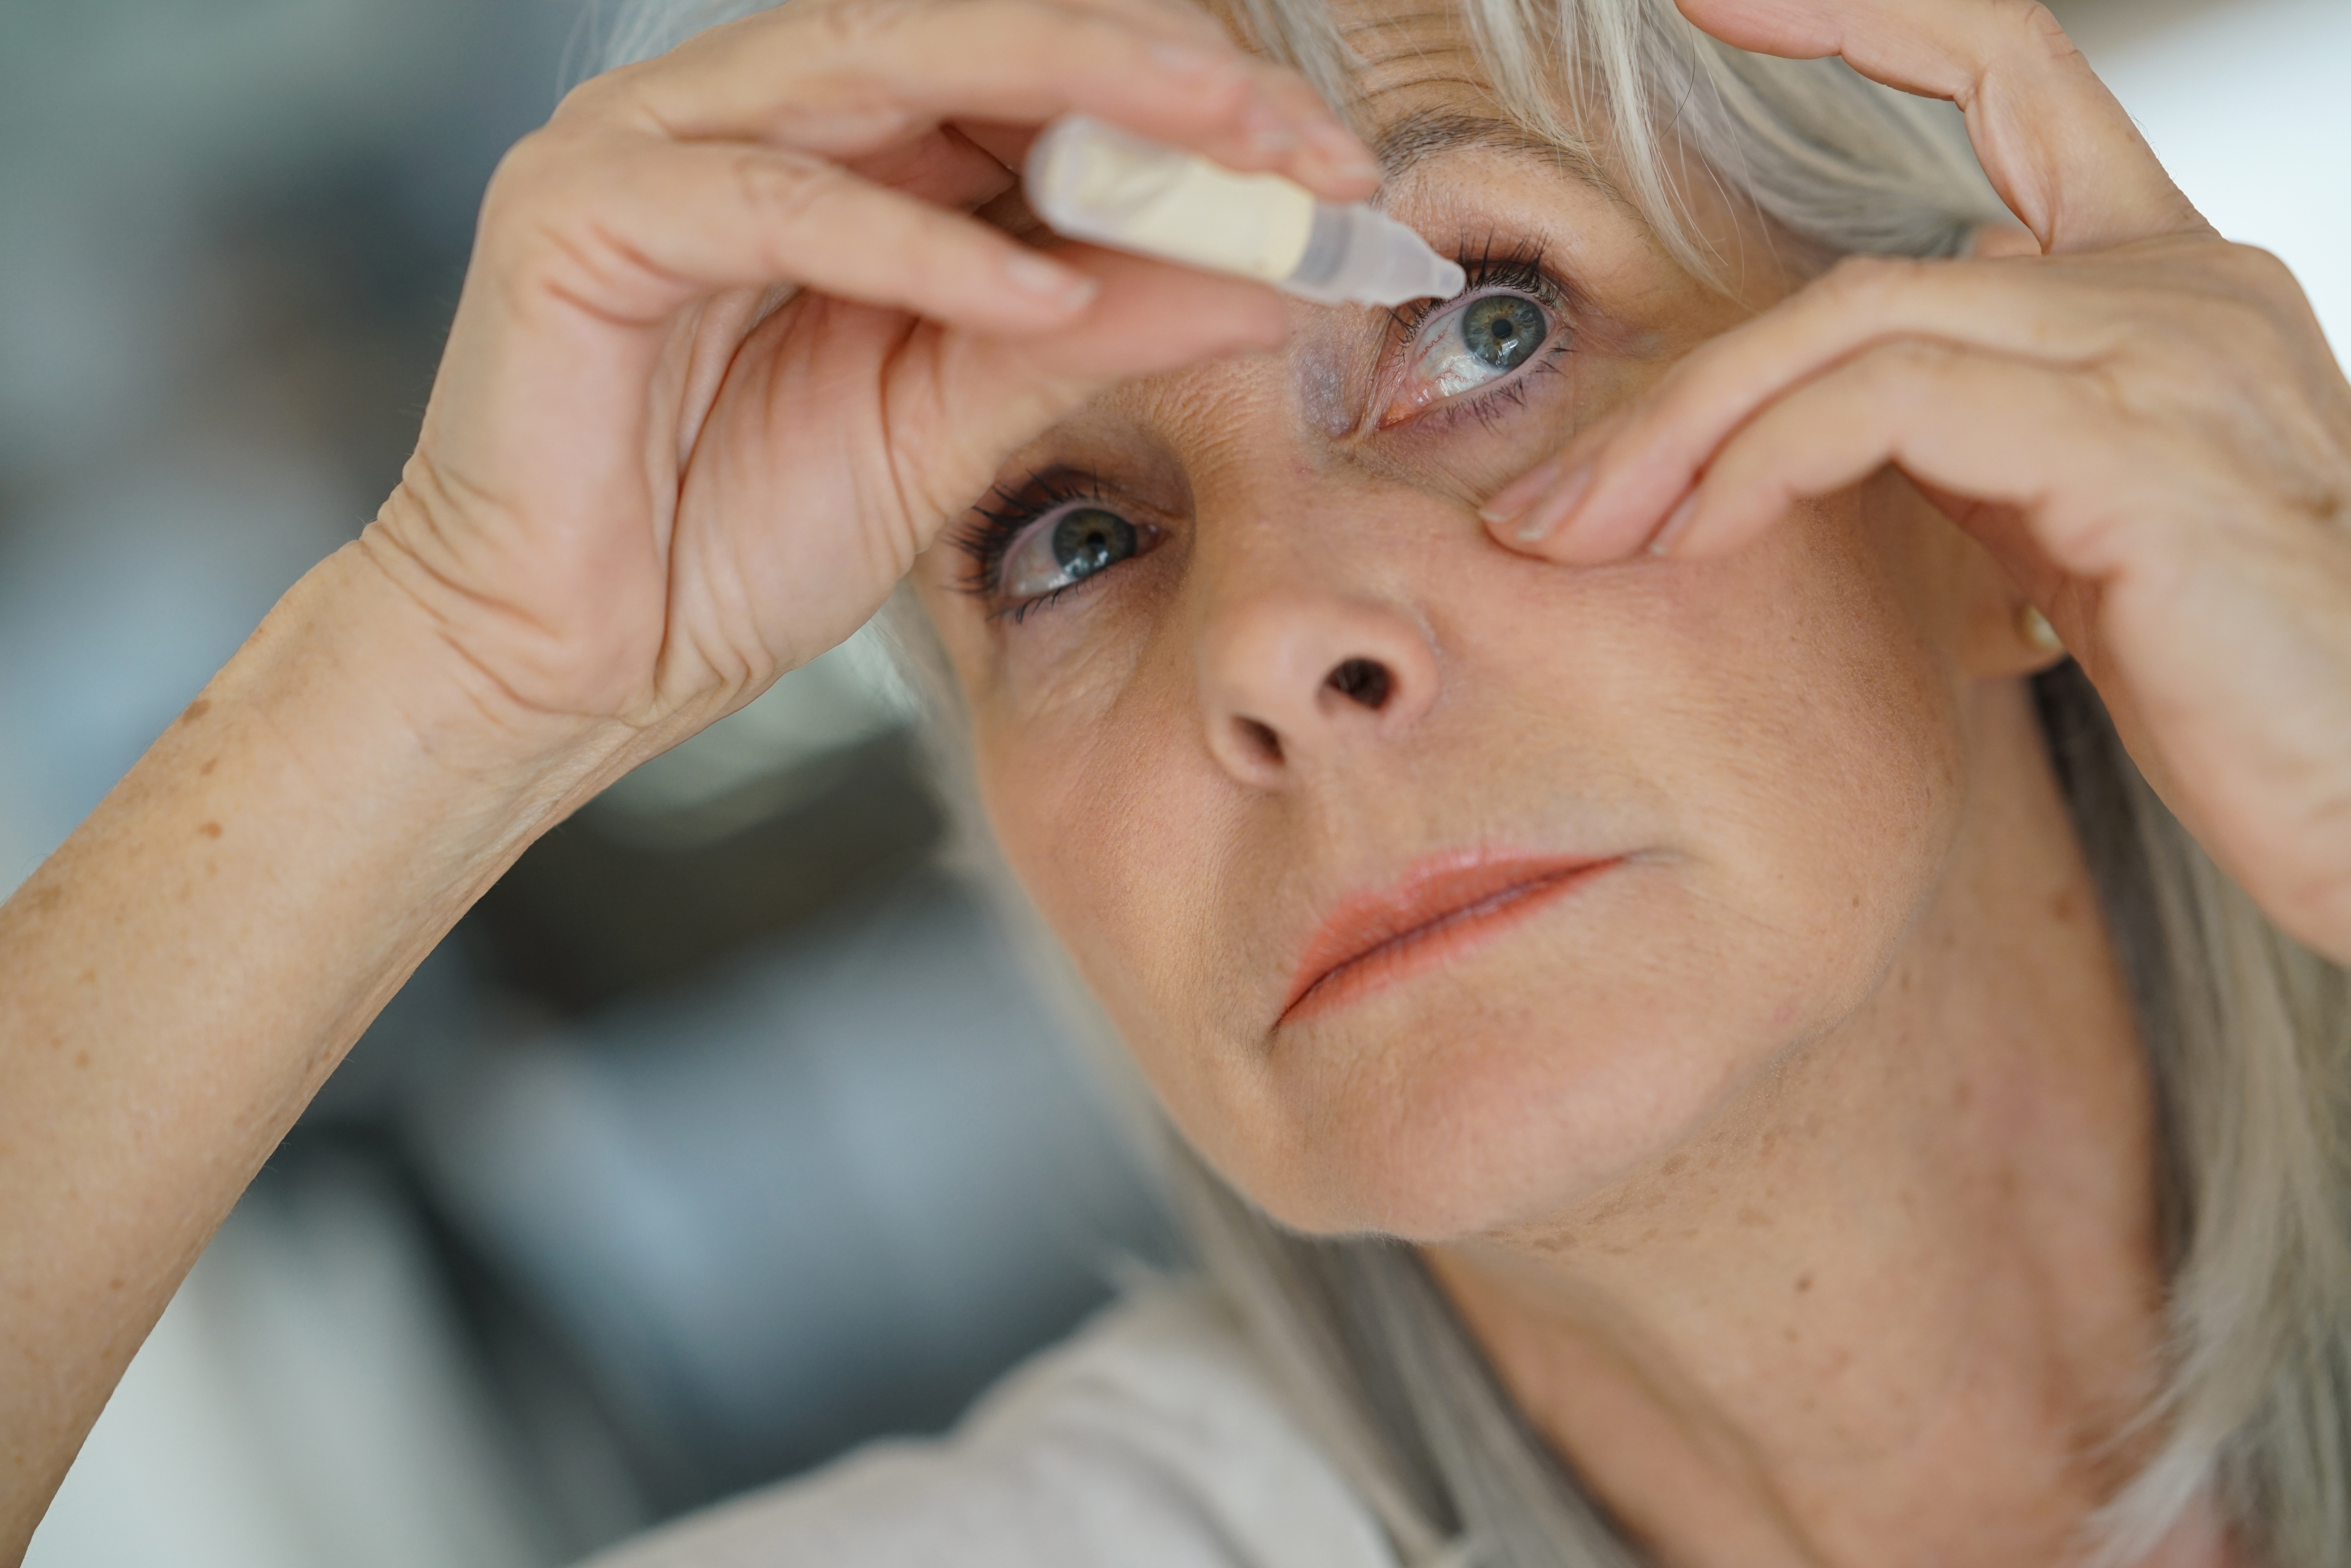 Elderly woman uses eye drops